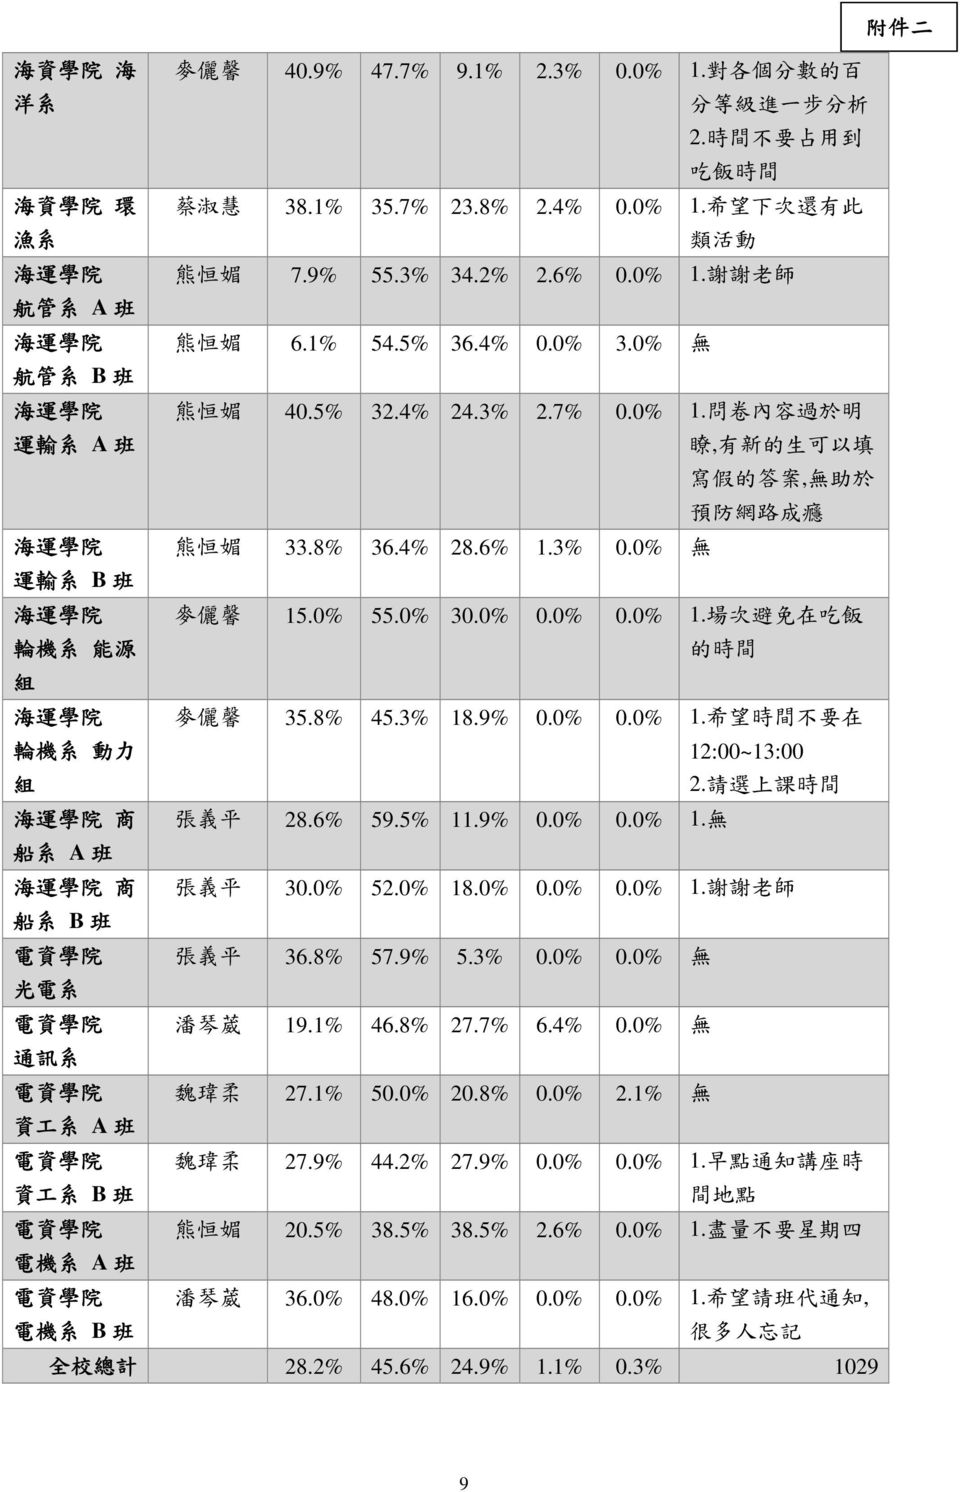 7% 0.0% 1. 問 卷 內 容 過 於 明 33.8% 36.4% 28.6% 1.3% 0.0% 無 瞭, 有 新 的 生 可 以 填 寫 假 的 答 案, 無 助 於 預 防 網 路 成 癮 麥 儷 馨 15.0% 55.0% 30.0% 0.0% 0.0% 1. 場 次 避 免 在 吃 飯 的 時 間 麥 儷 馨 35.8% 45.3% 18.9% 0.0% 0.0% 1. 希 望 時 間 不 要 在 12:00~13:00 2.